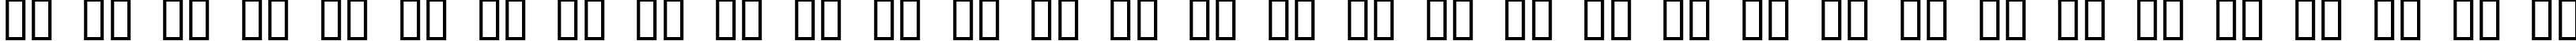 Пример написания русского алфавита шрифтом Penelope